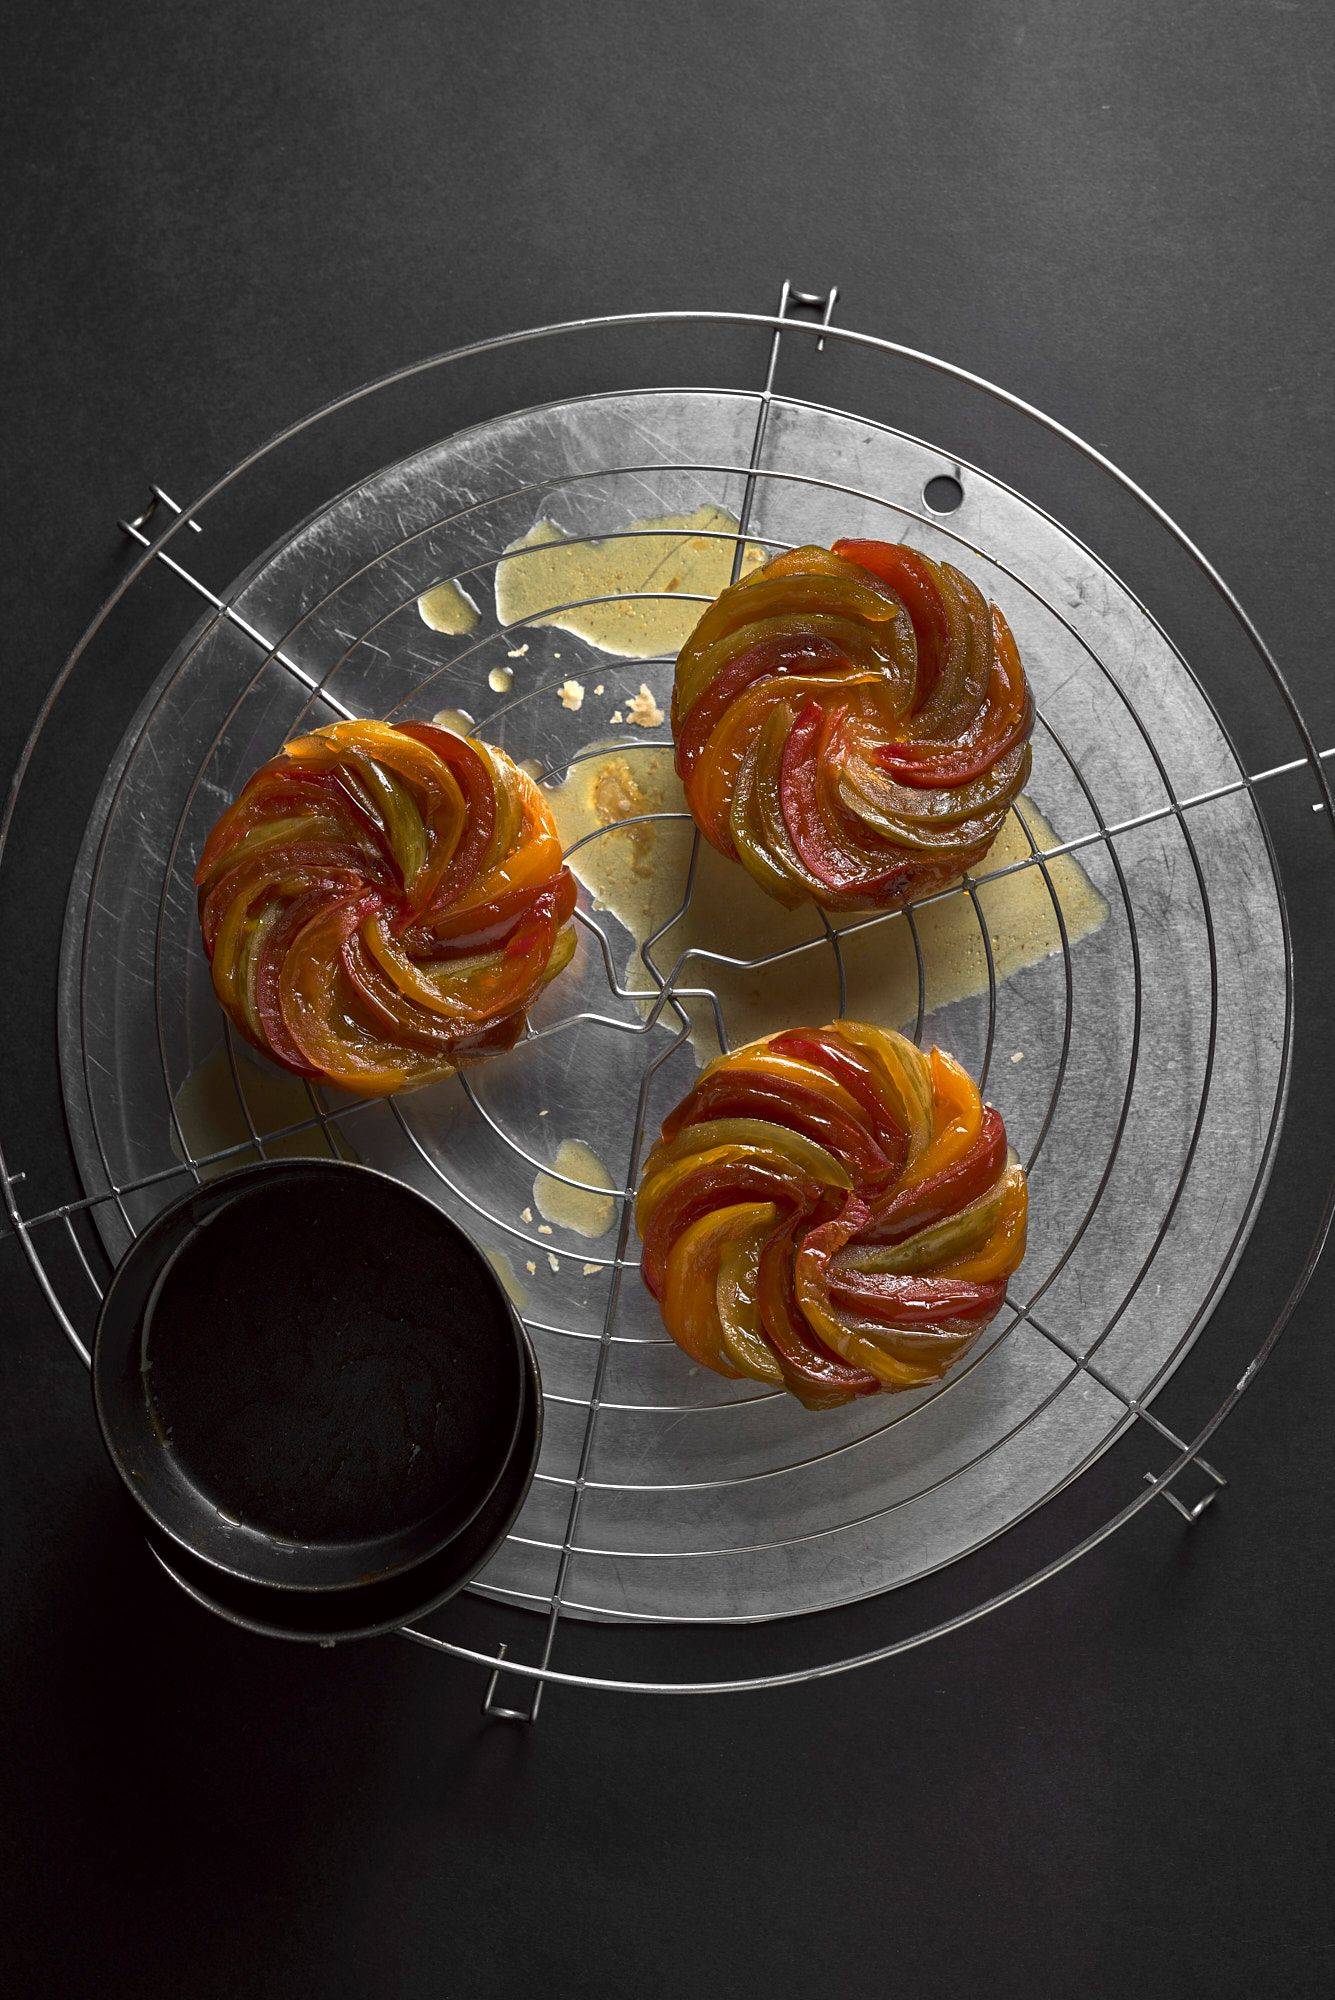 drei frisch gebackene tomaten tarte tatins auf einem gitter mit schwarzem hintergrund